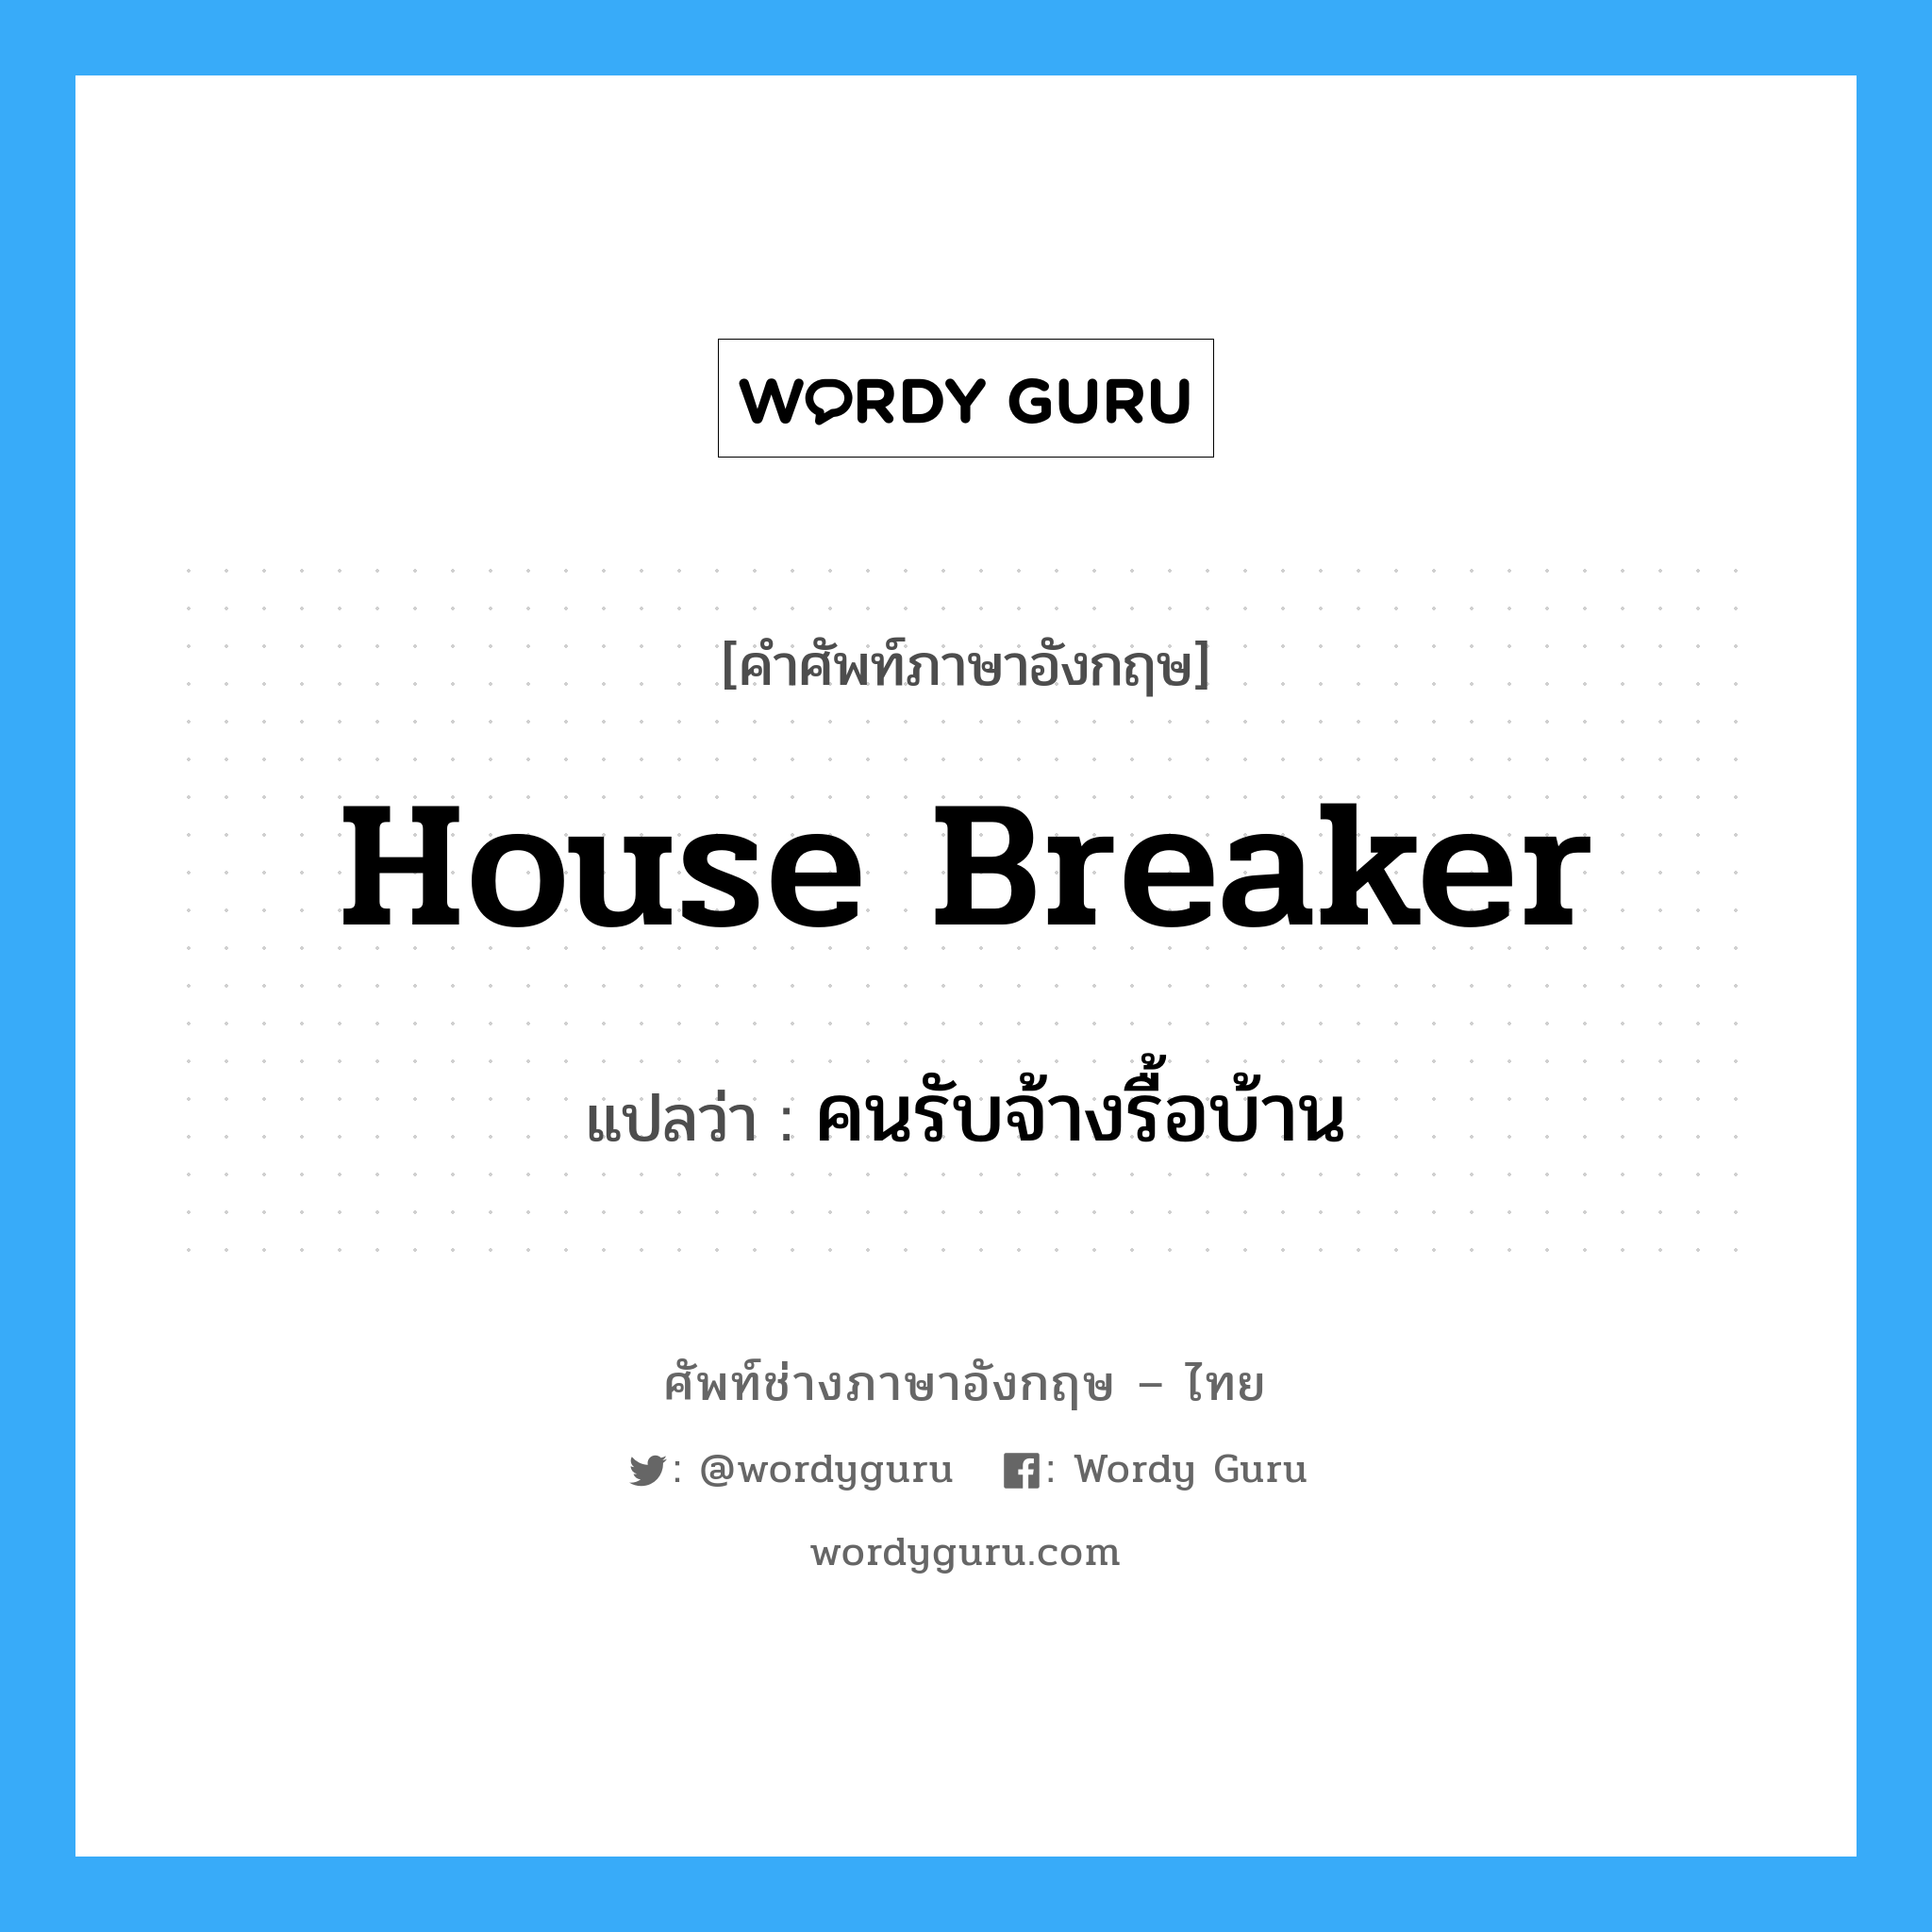 house-breaker แปลว่า?, คำศัพท์ช่างภาษาอังกฤษ - ไทย house breaker คำศัพท์ภาษาอังกฤษ house breaker แปลว่า คนรับจ้างรื้อบ้าน